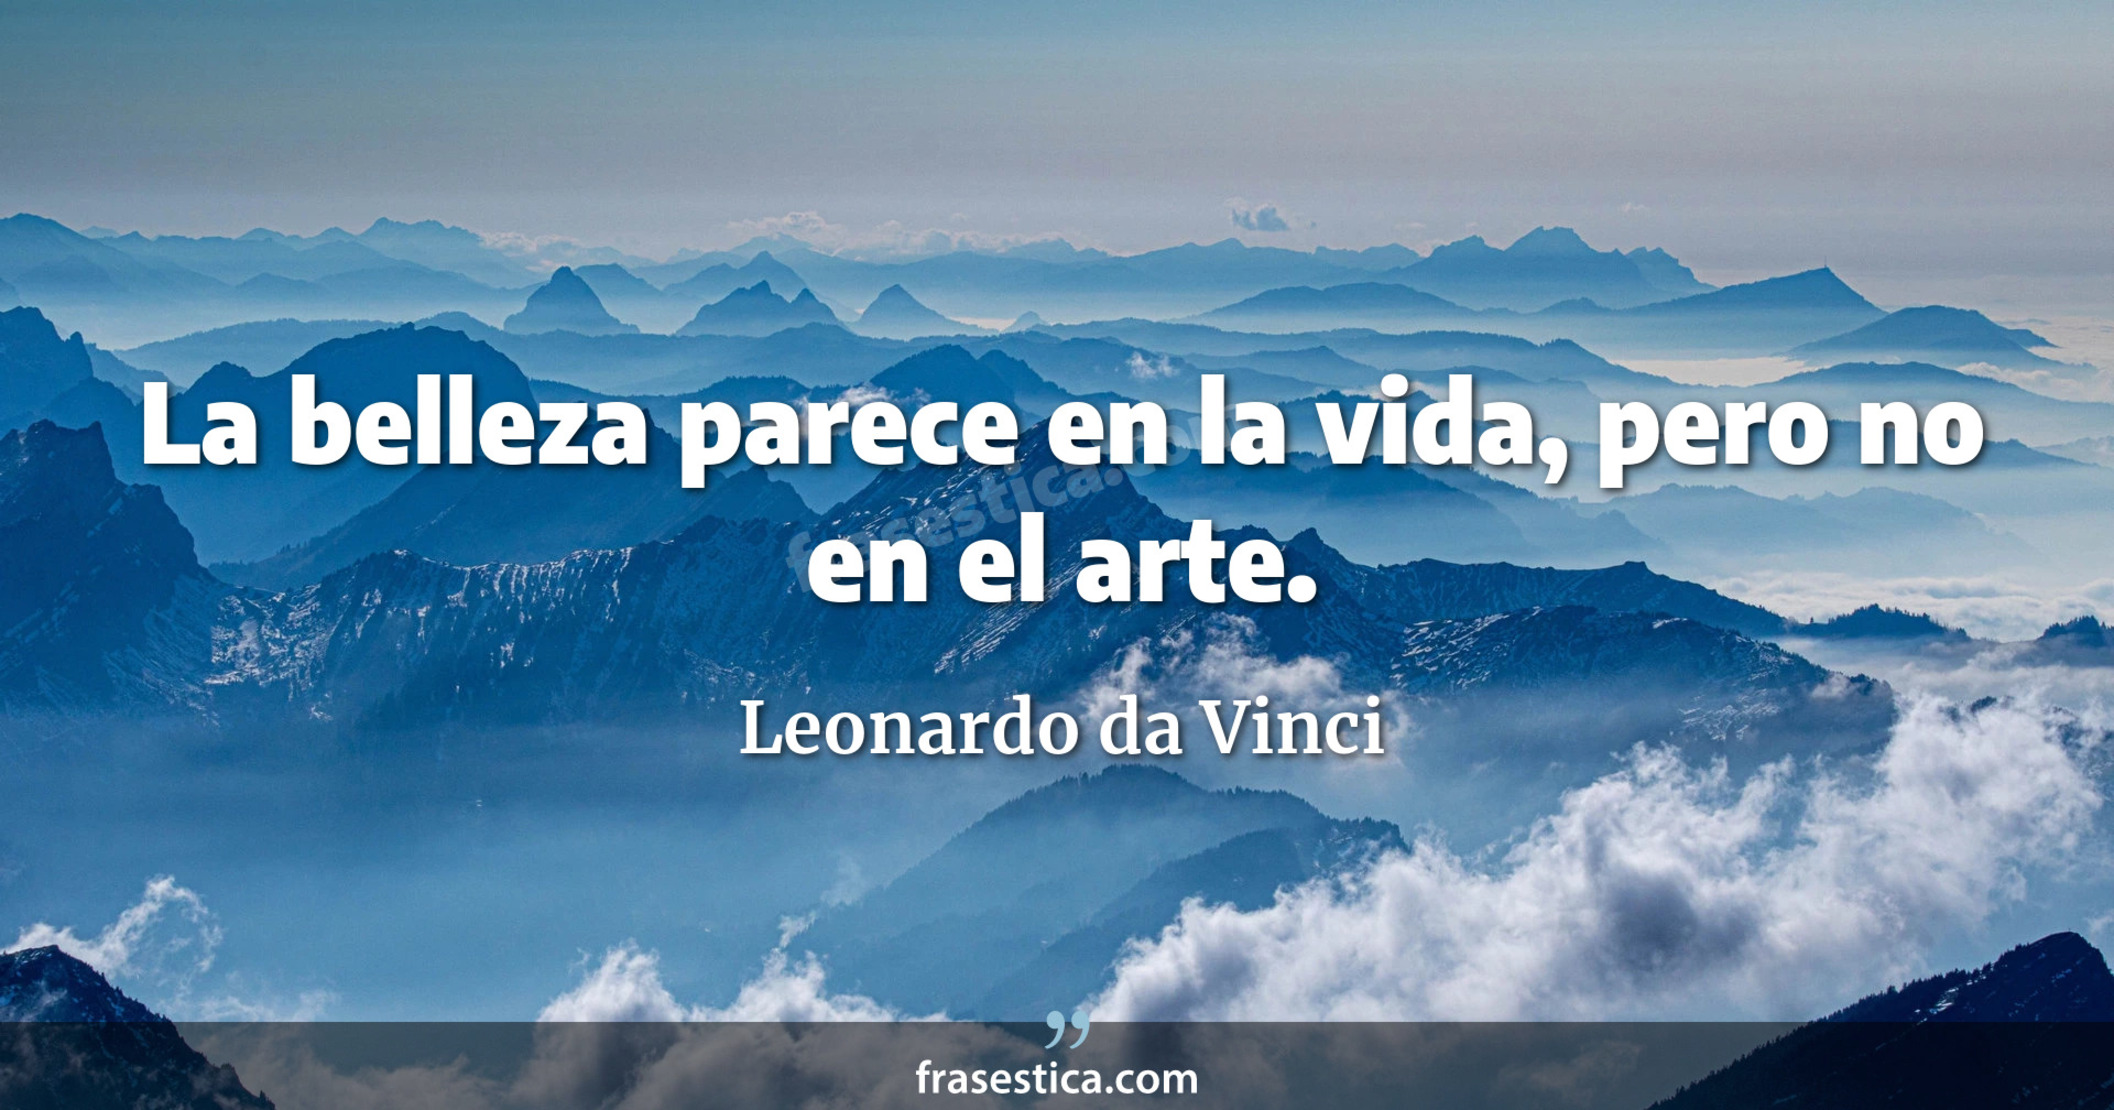 La belleza parece en la vida, pero no en el arte. - Leonardo da Vinci